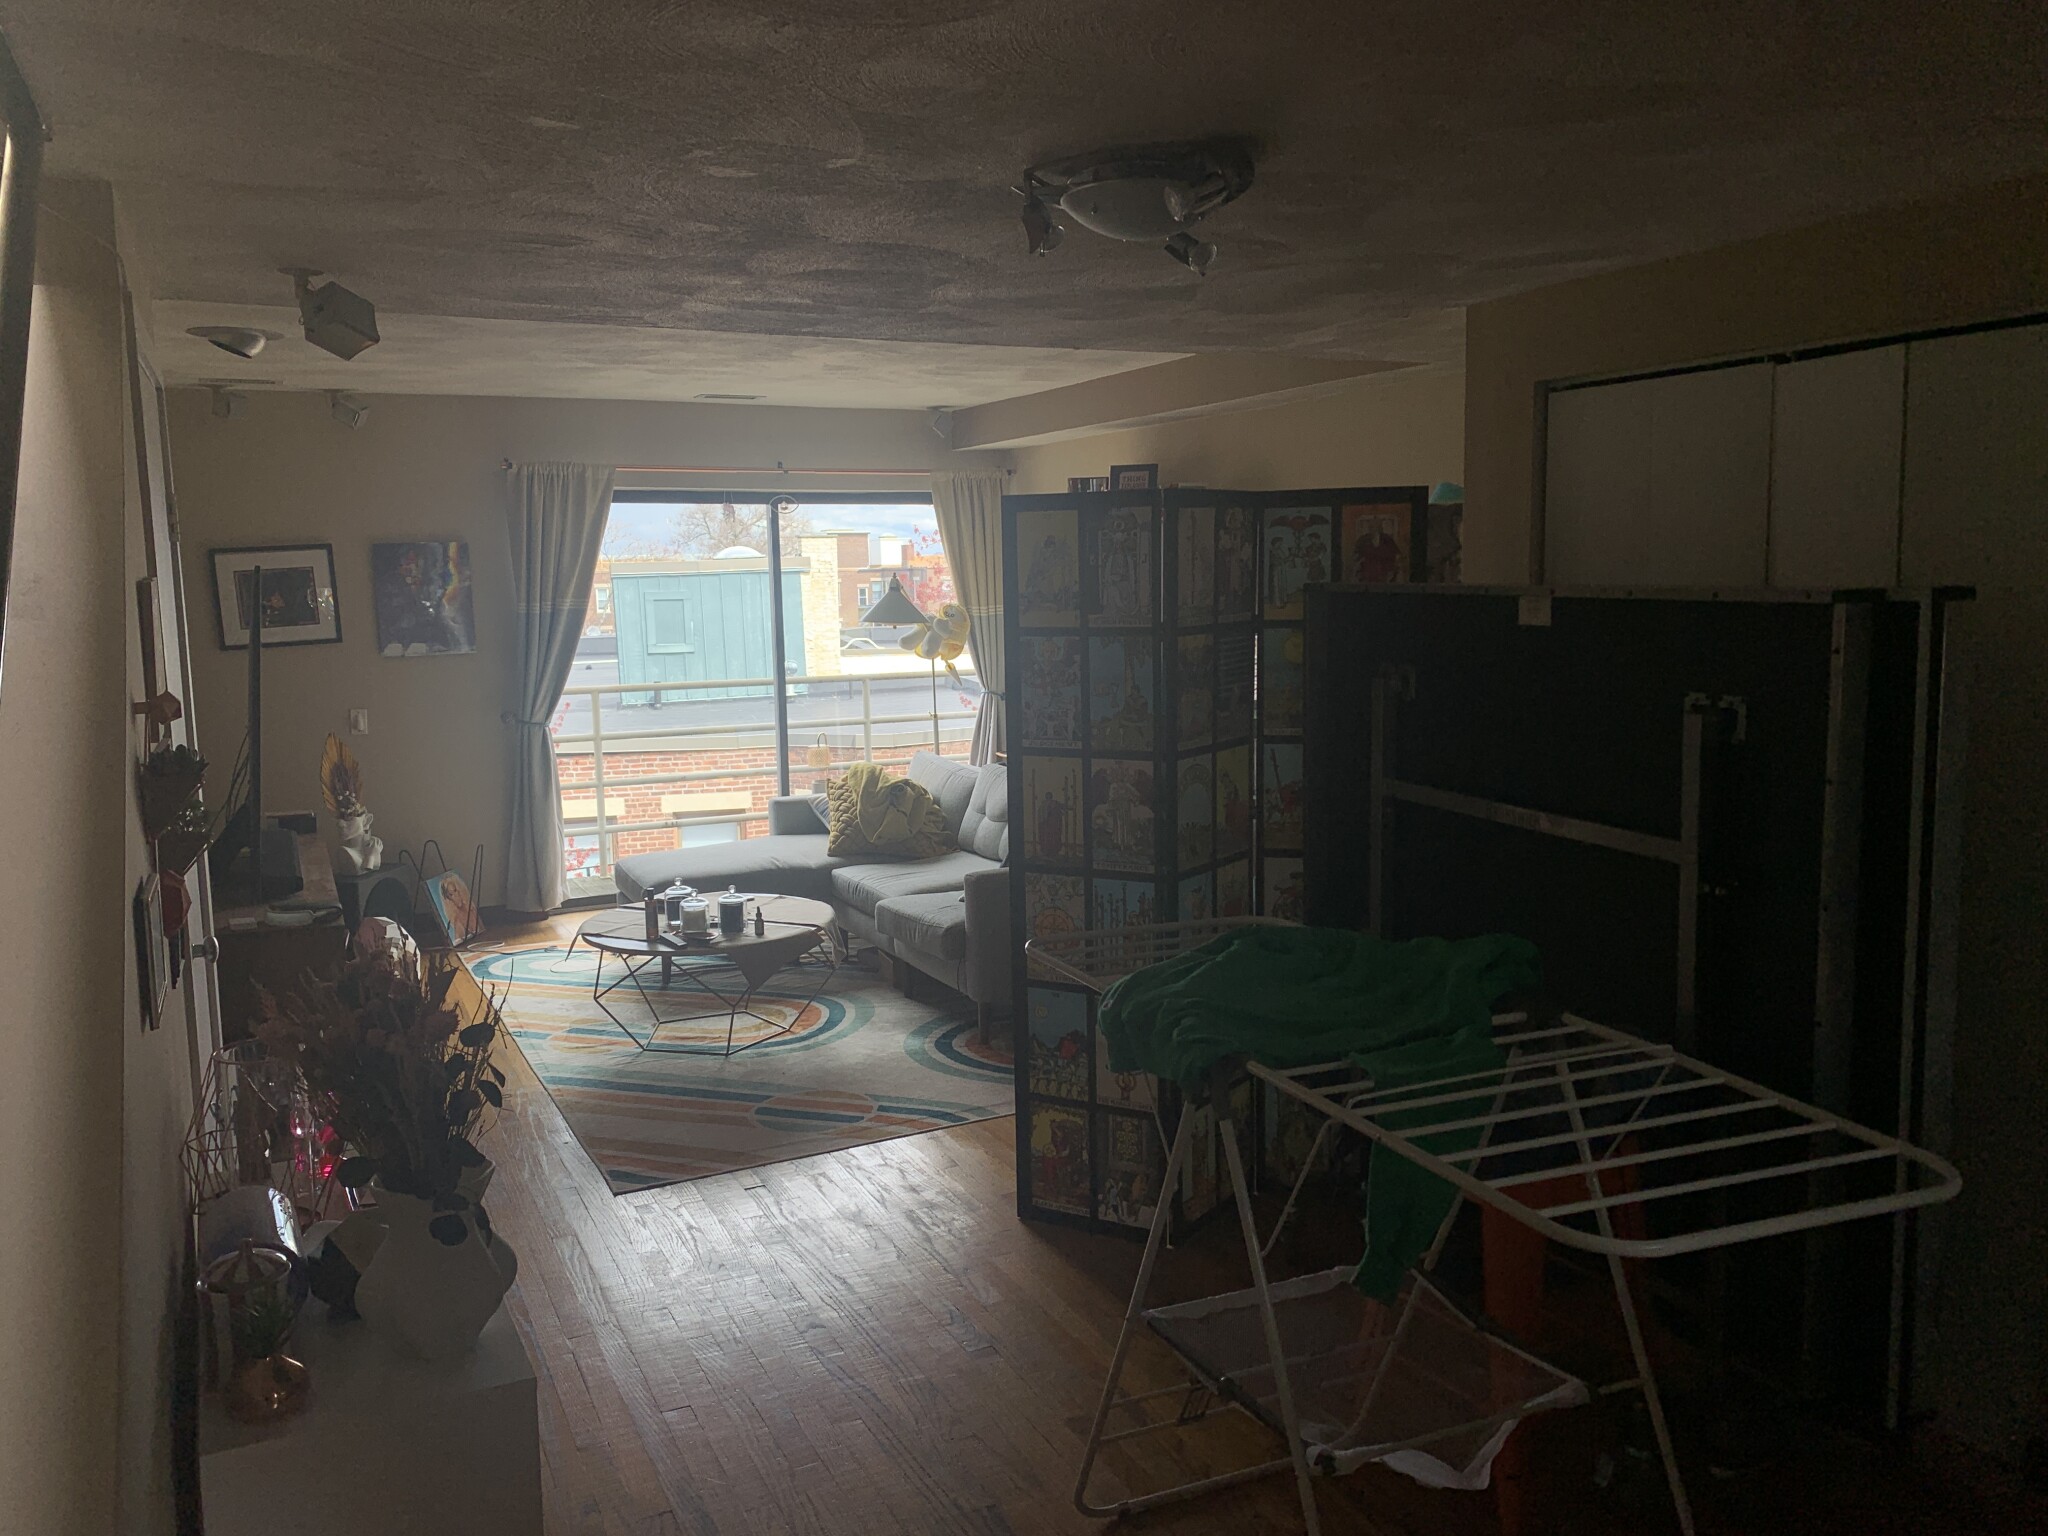 Photos of apartment on Allston,Boston MA 02134